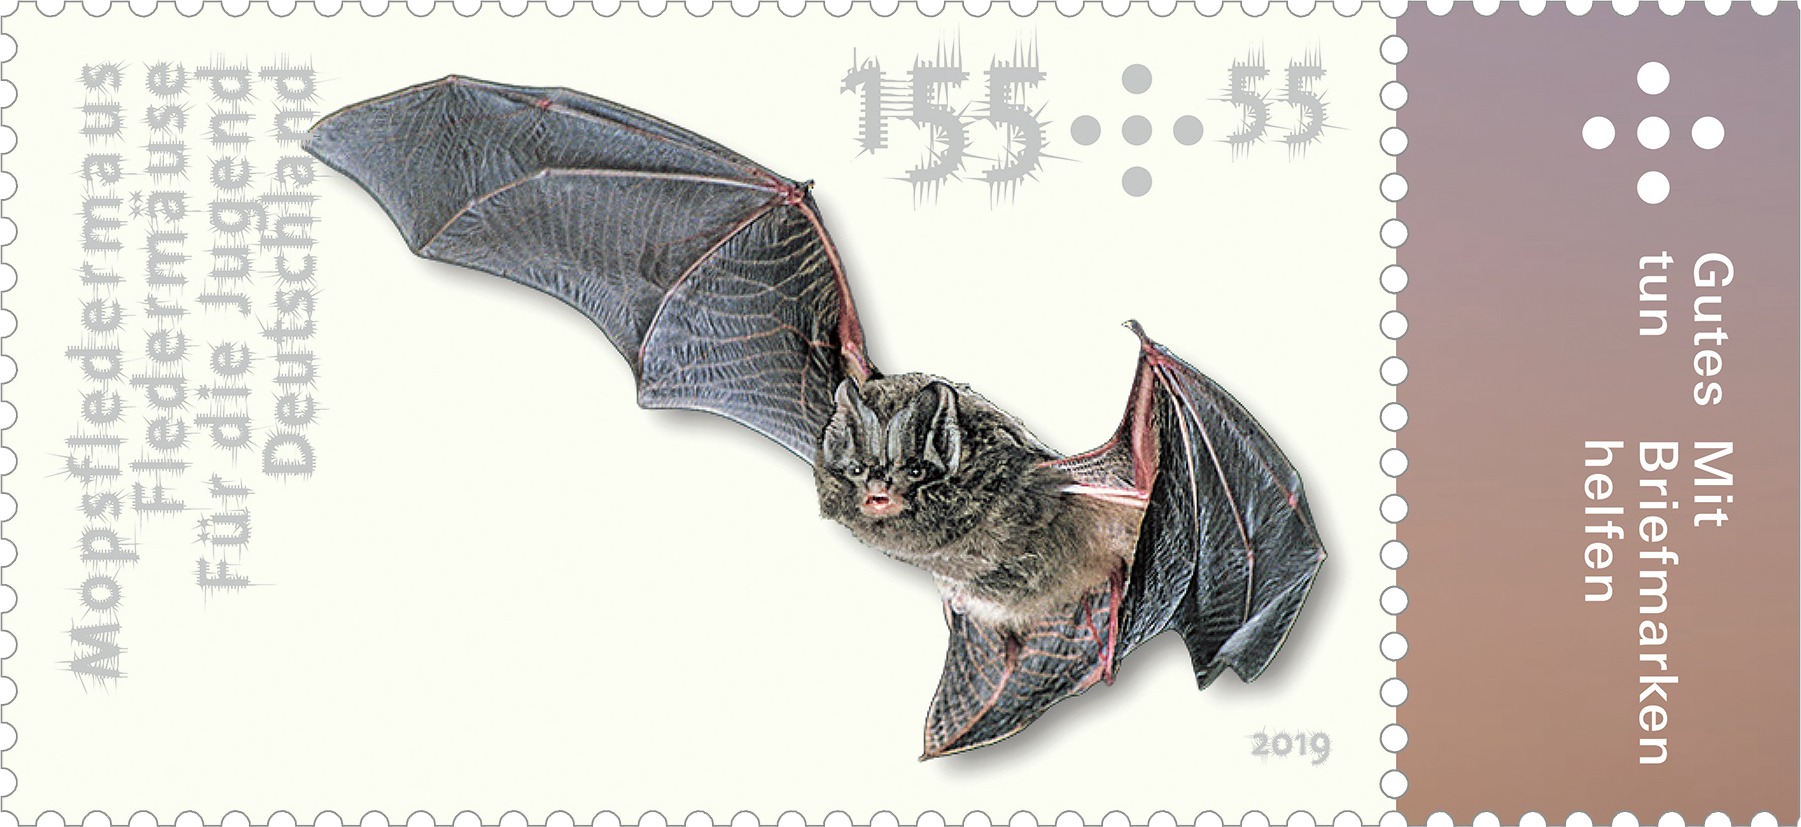 Briefmarke Fledermäuse